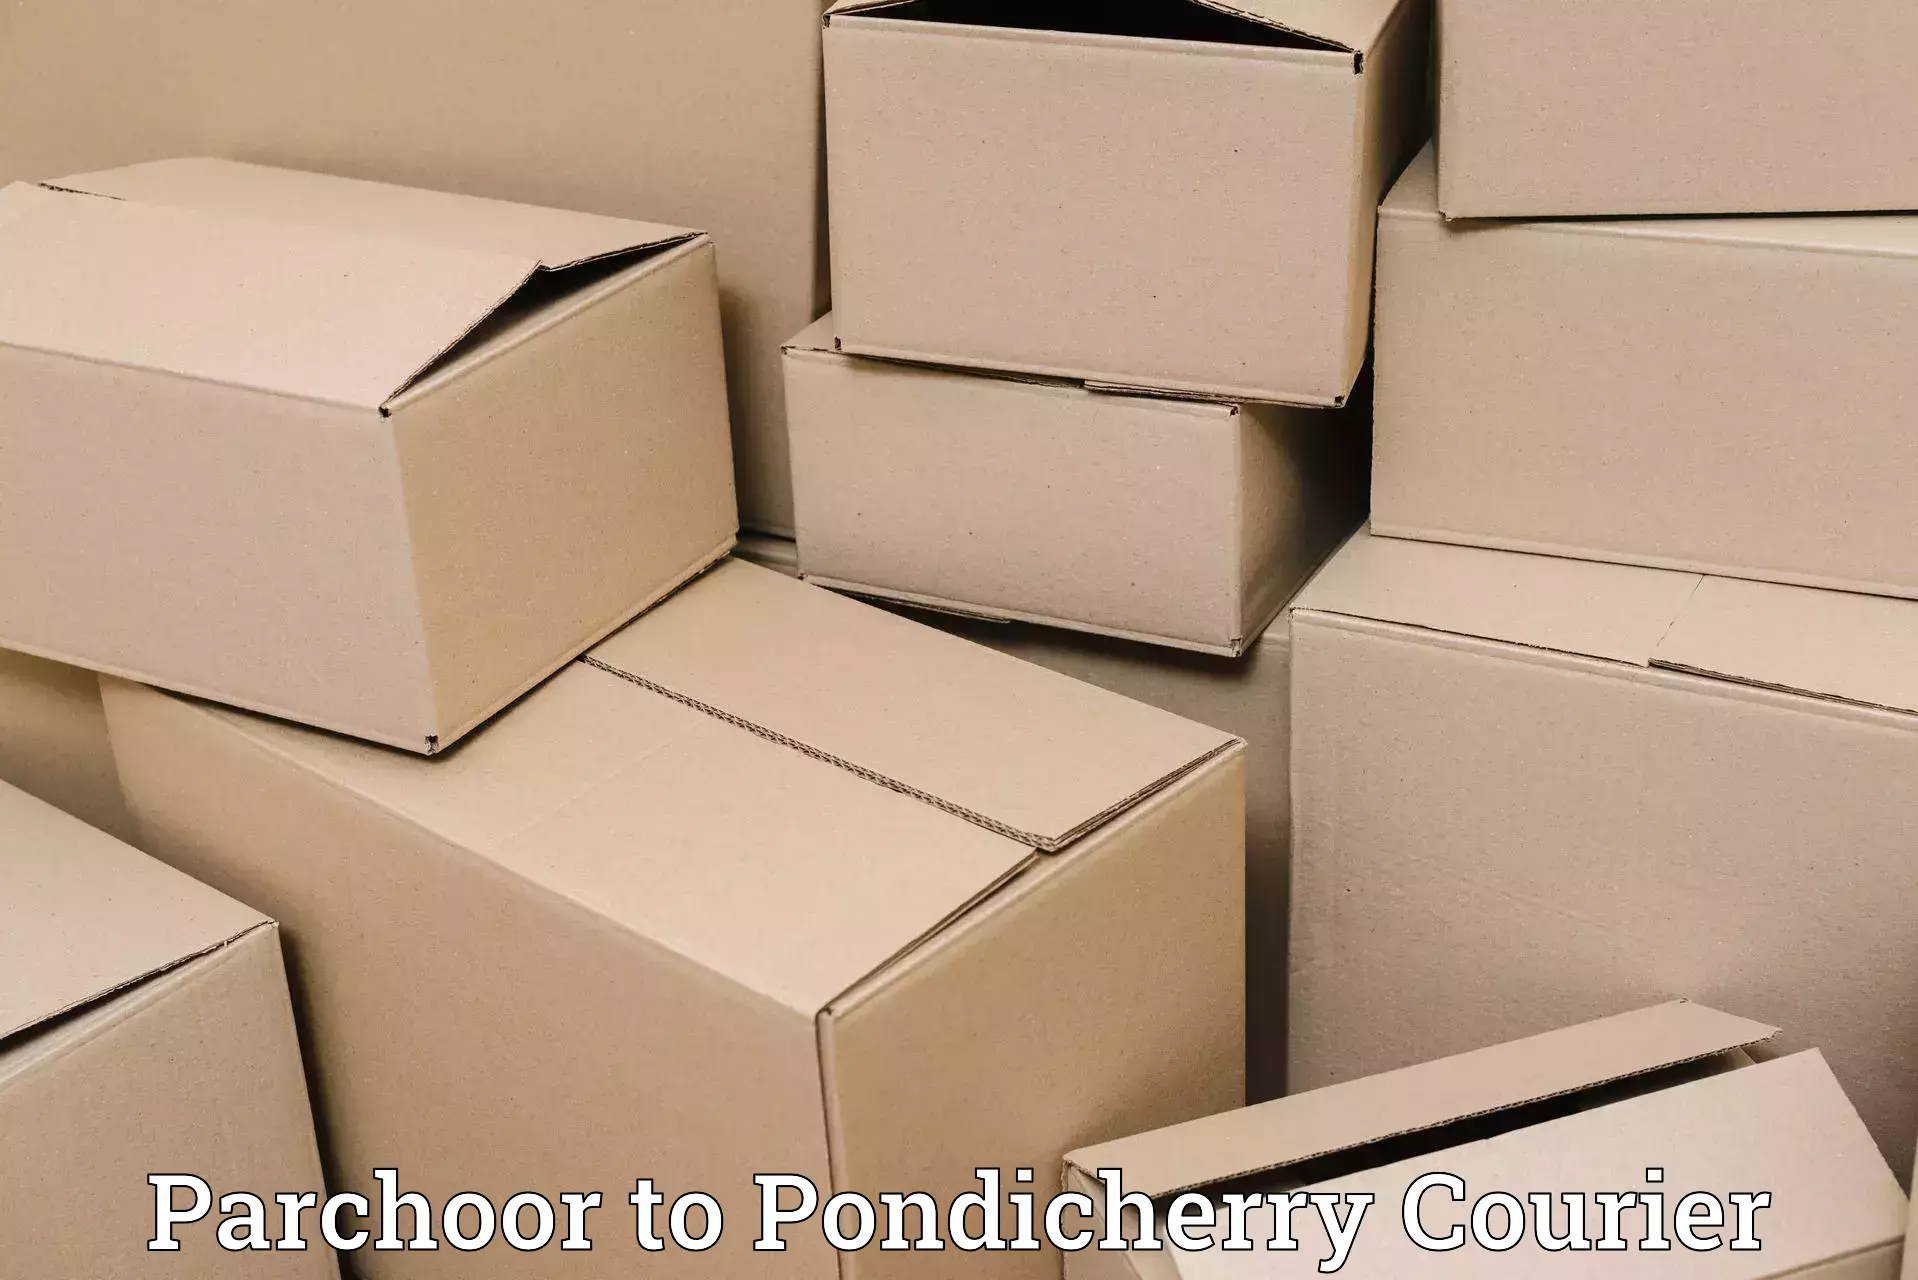 E-commerce fulfillment Parchoor to Pondicherry University